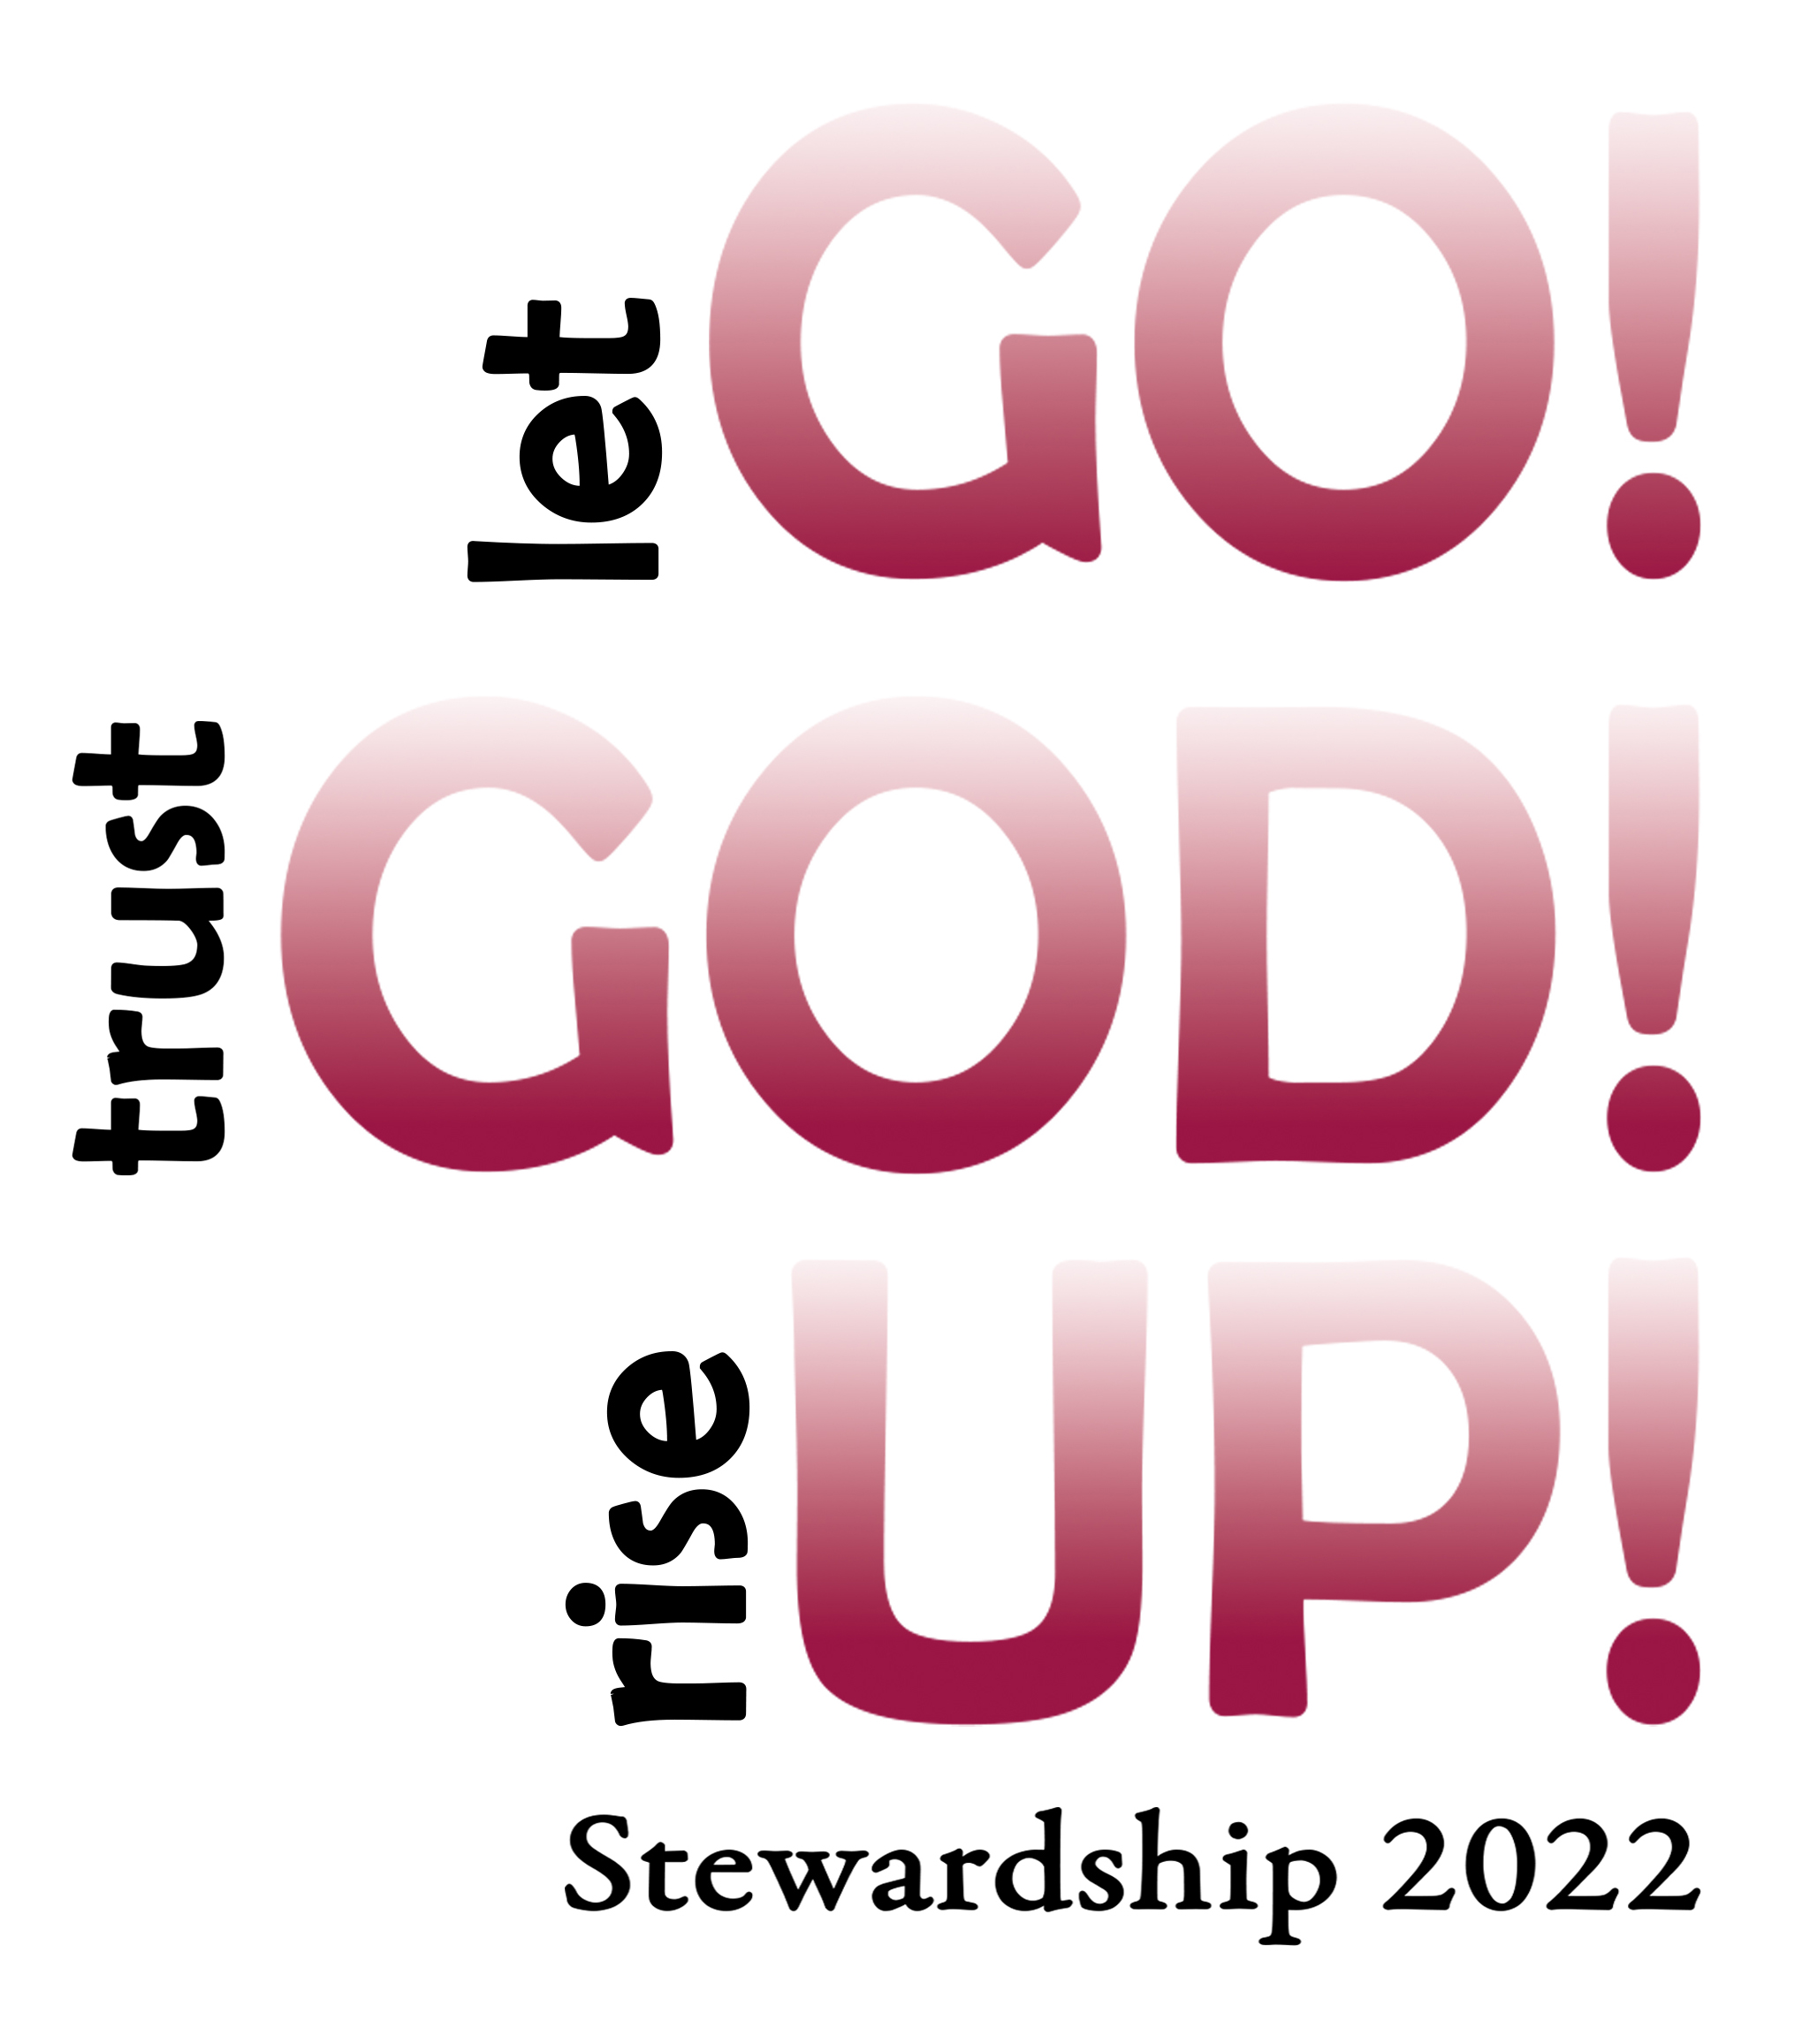 2022 Stewardship logo